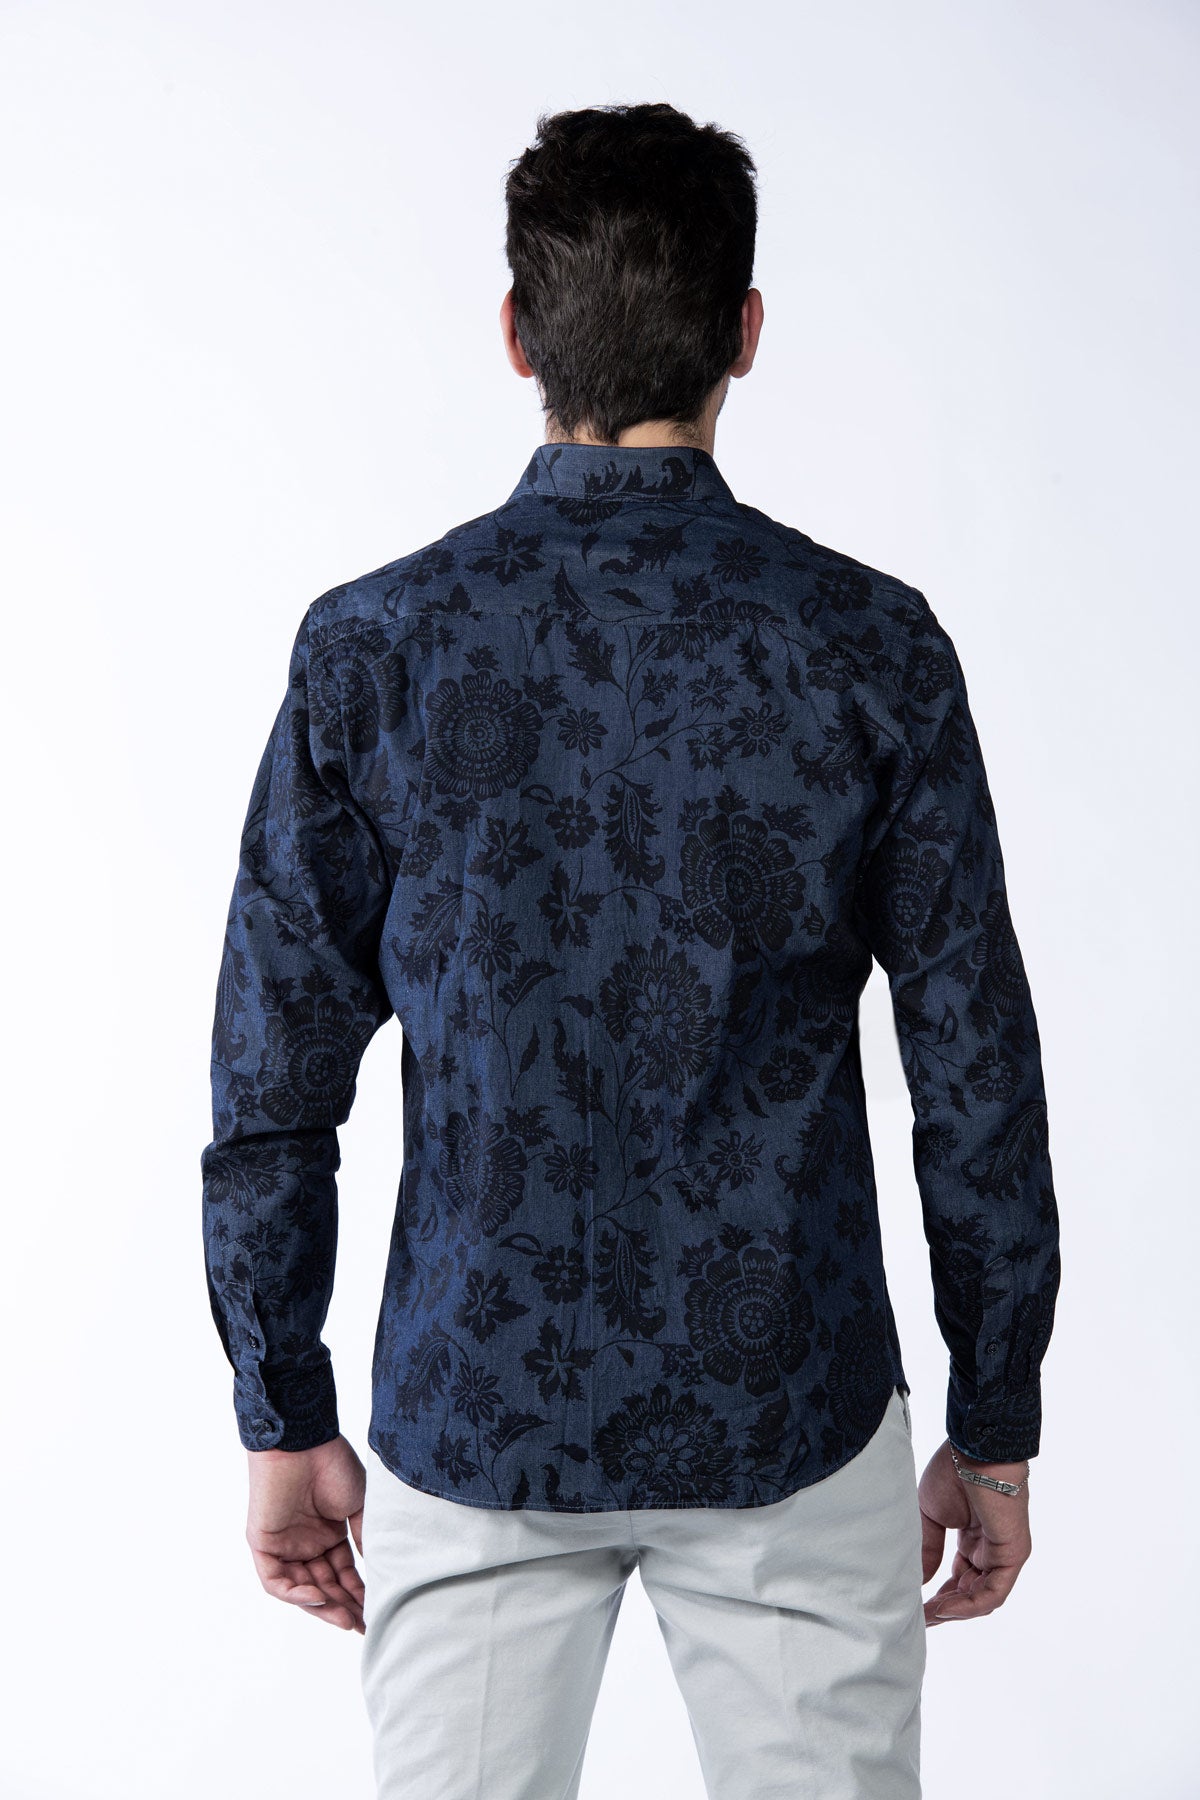 Pánská bavlněná košile s květinovým vzorem modrá